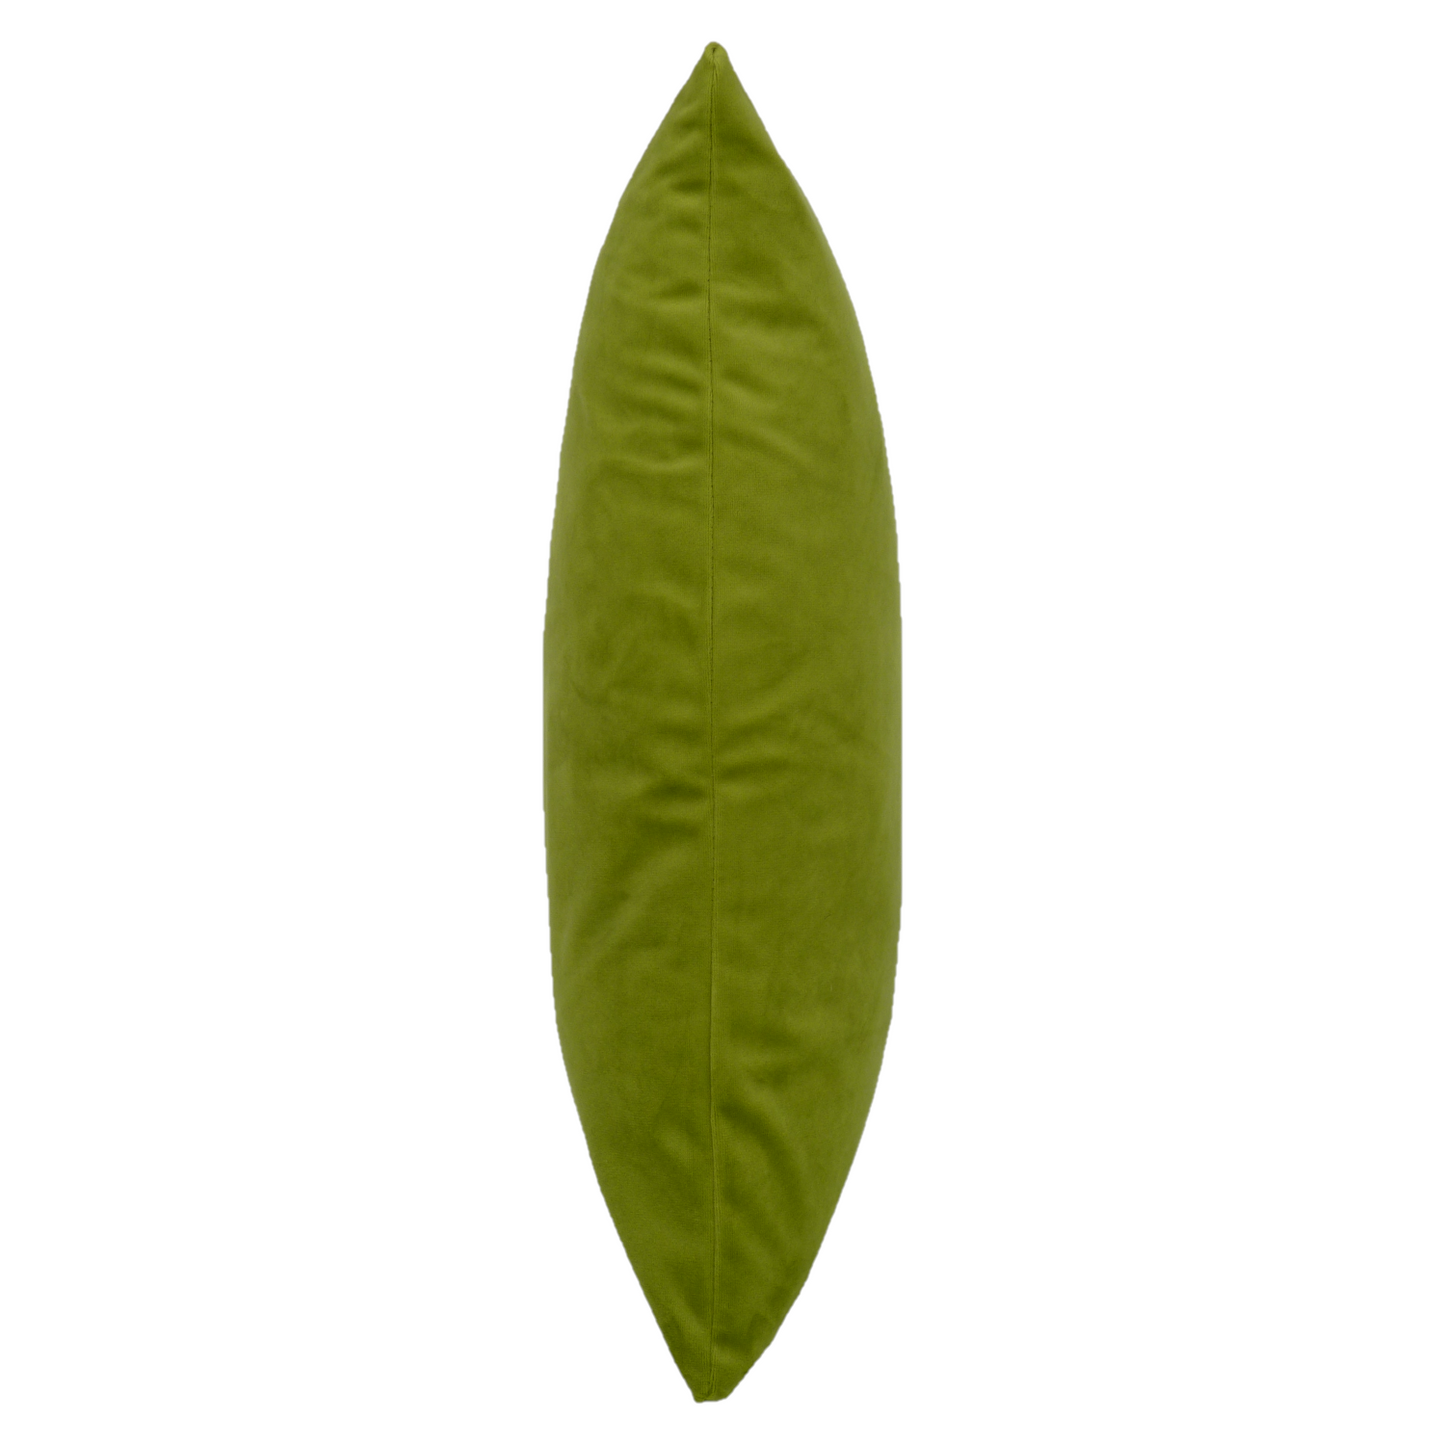 Opulence Sage Green Velvet Cushion (50cm x 50cm)